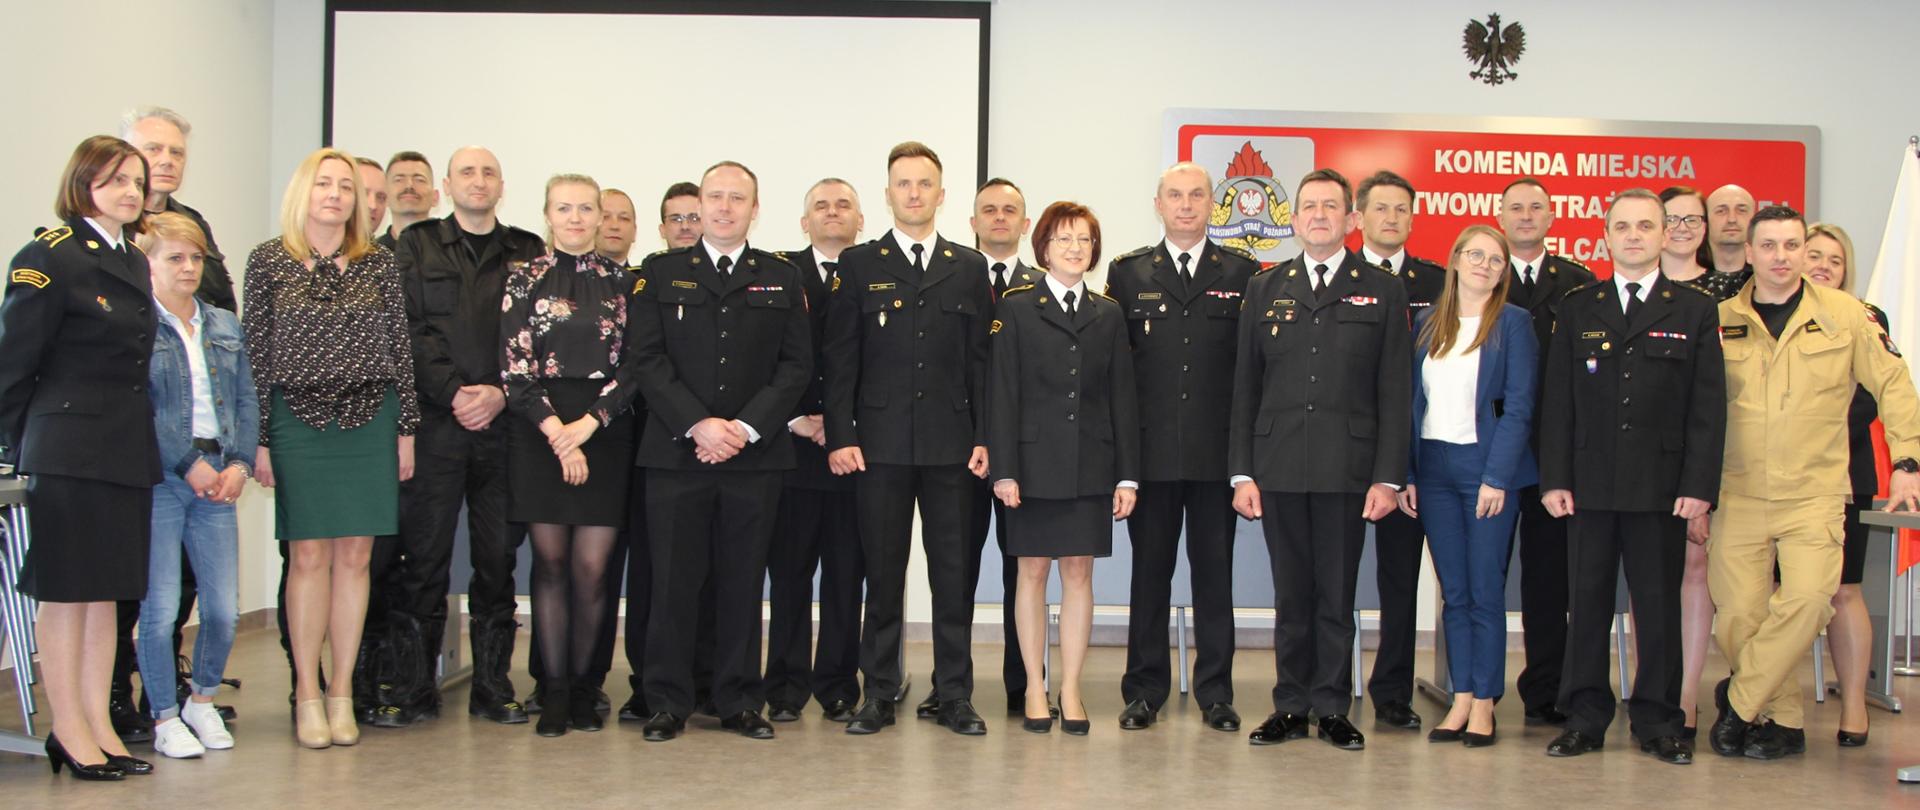 Na zdjęciu przedstawiono zgromadzonych współpracowników odchodzącego naczelnika Wydziału Kwatermistrzowsko-Technicznego z komendy miejskiej Państwowej Straży Pożarnej w Kielcach.